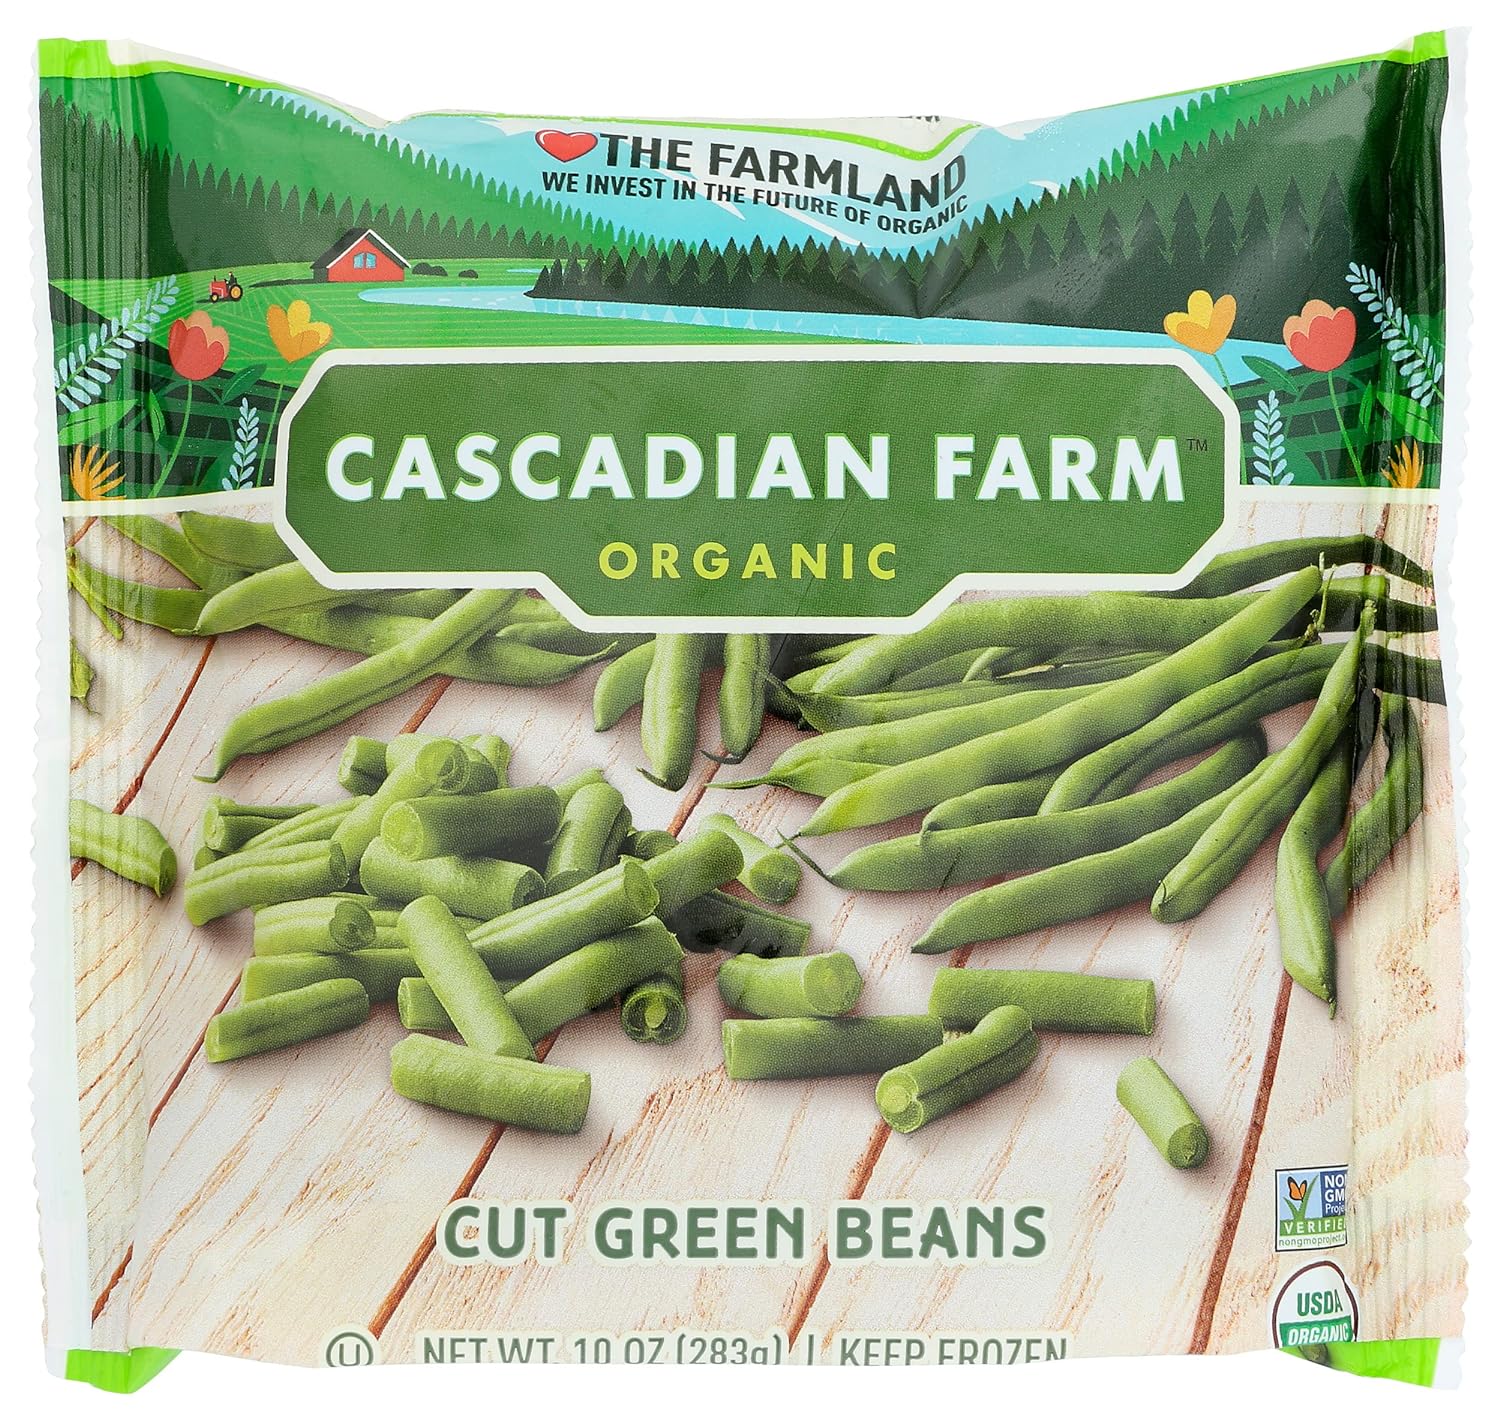 Cascadian Farm Organic Cut Green Beans, Non-GMO, Frozen Vegetables, 10 oz